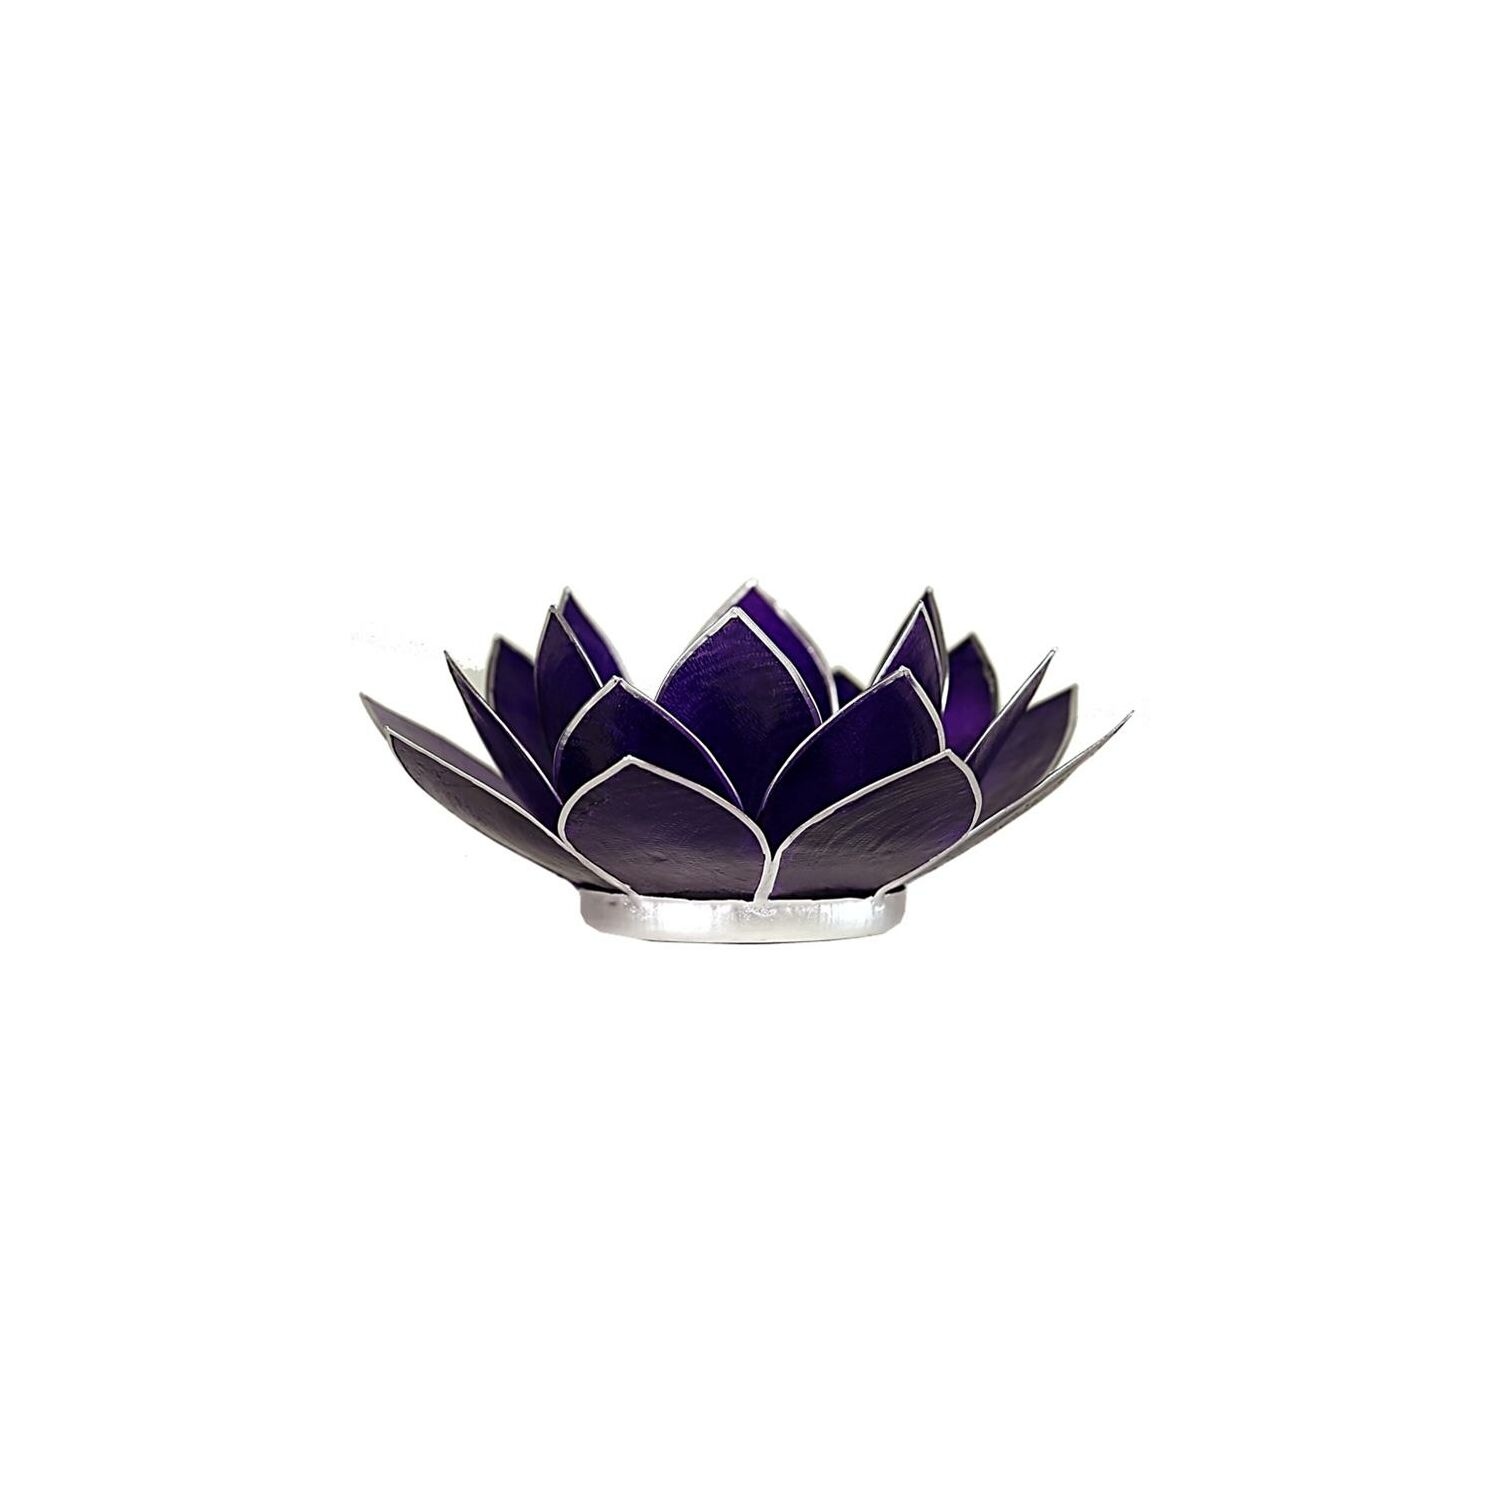 Mécsestartó Lótuszvirág 13,5 cm - sötétlila, koronacsakra, ezüst szegély